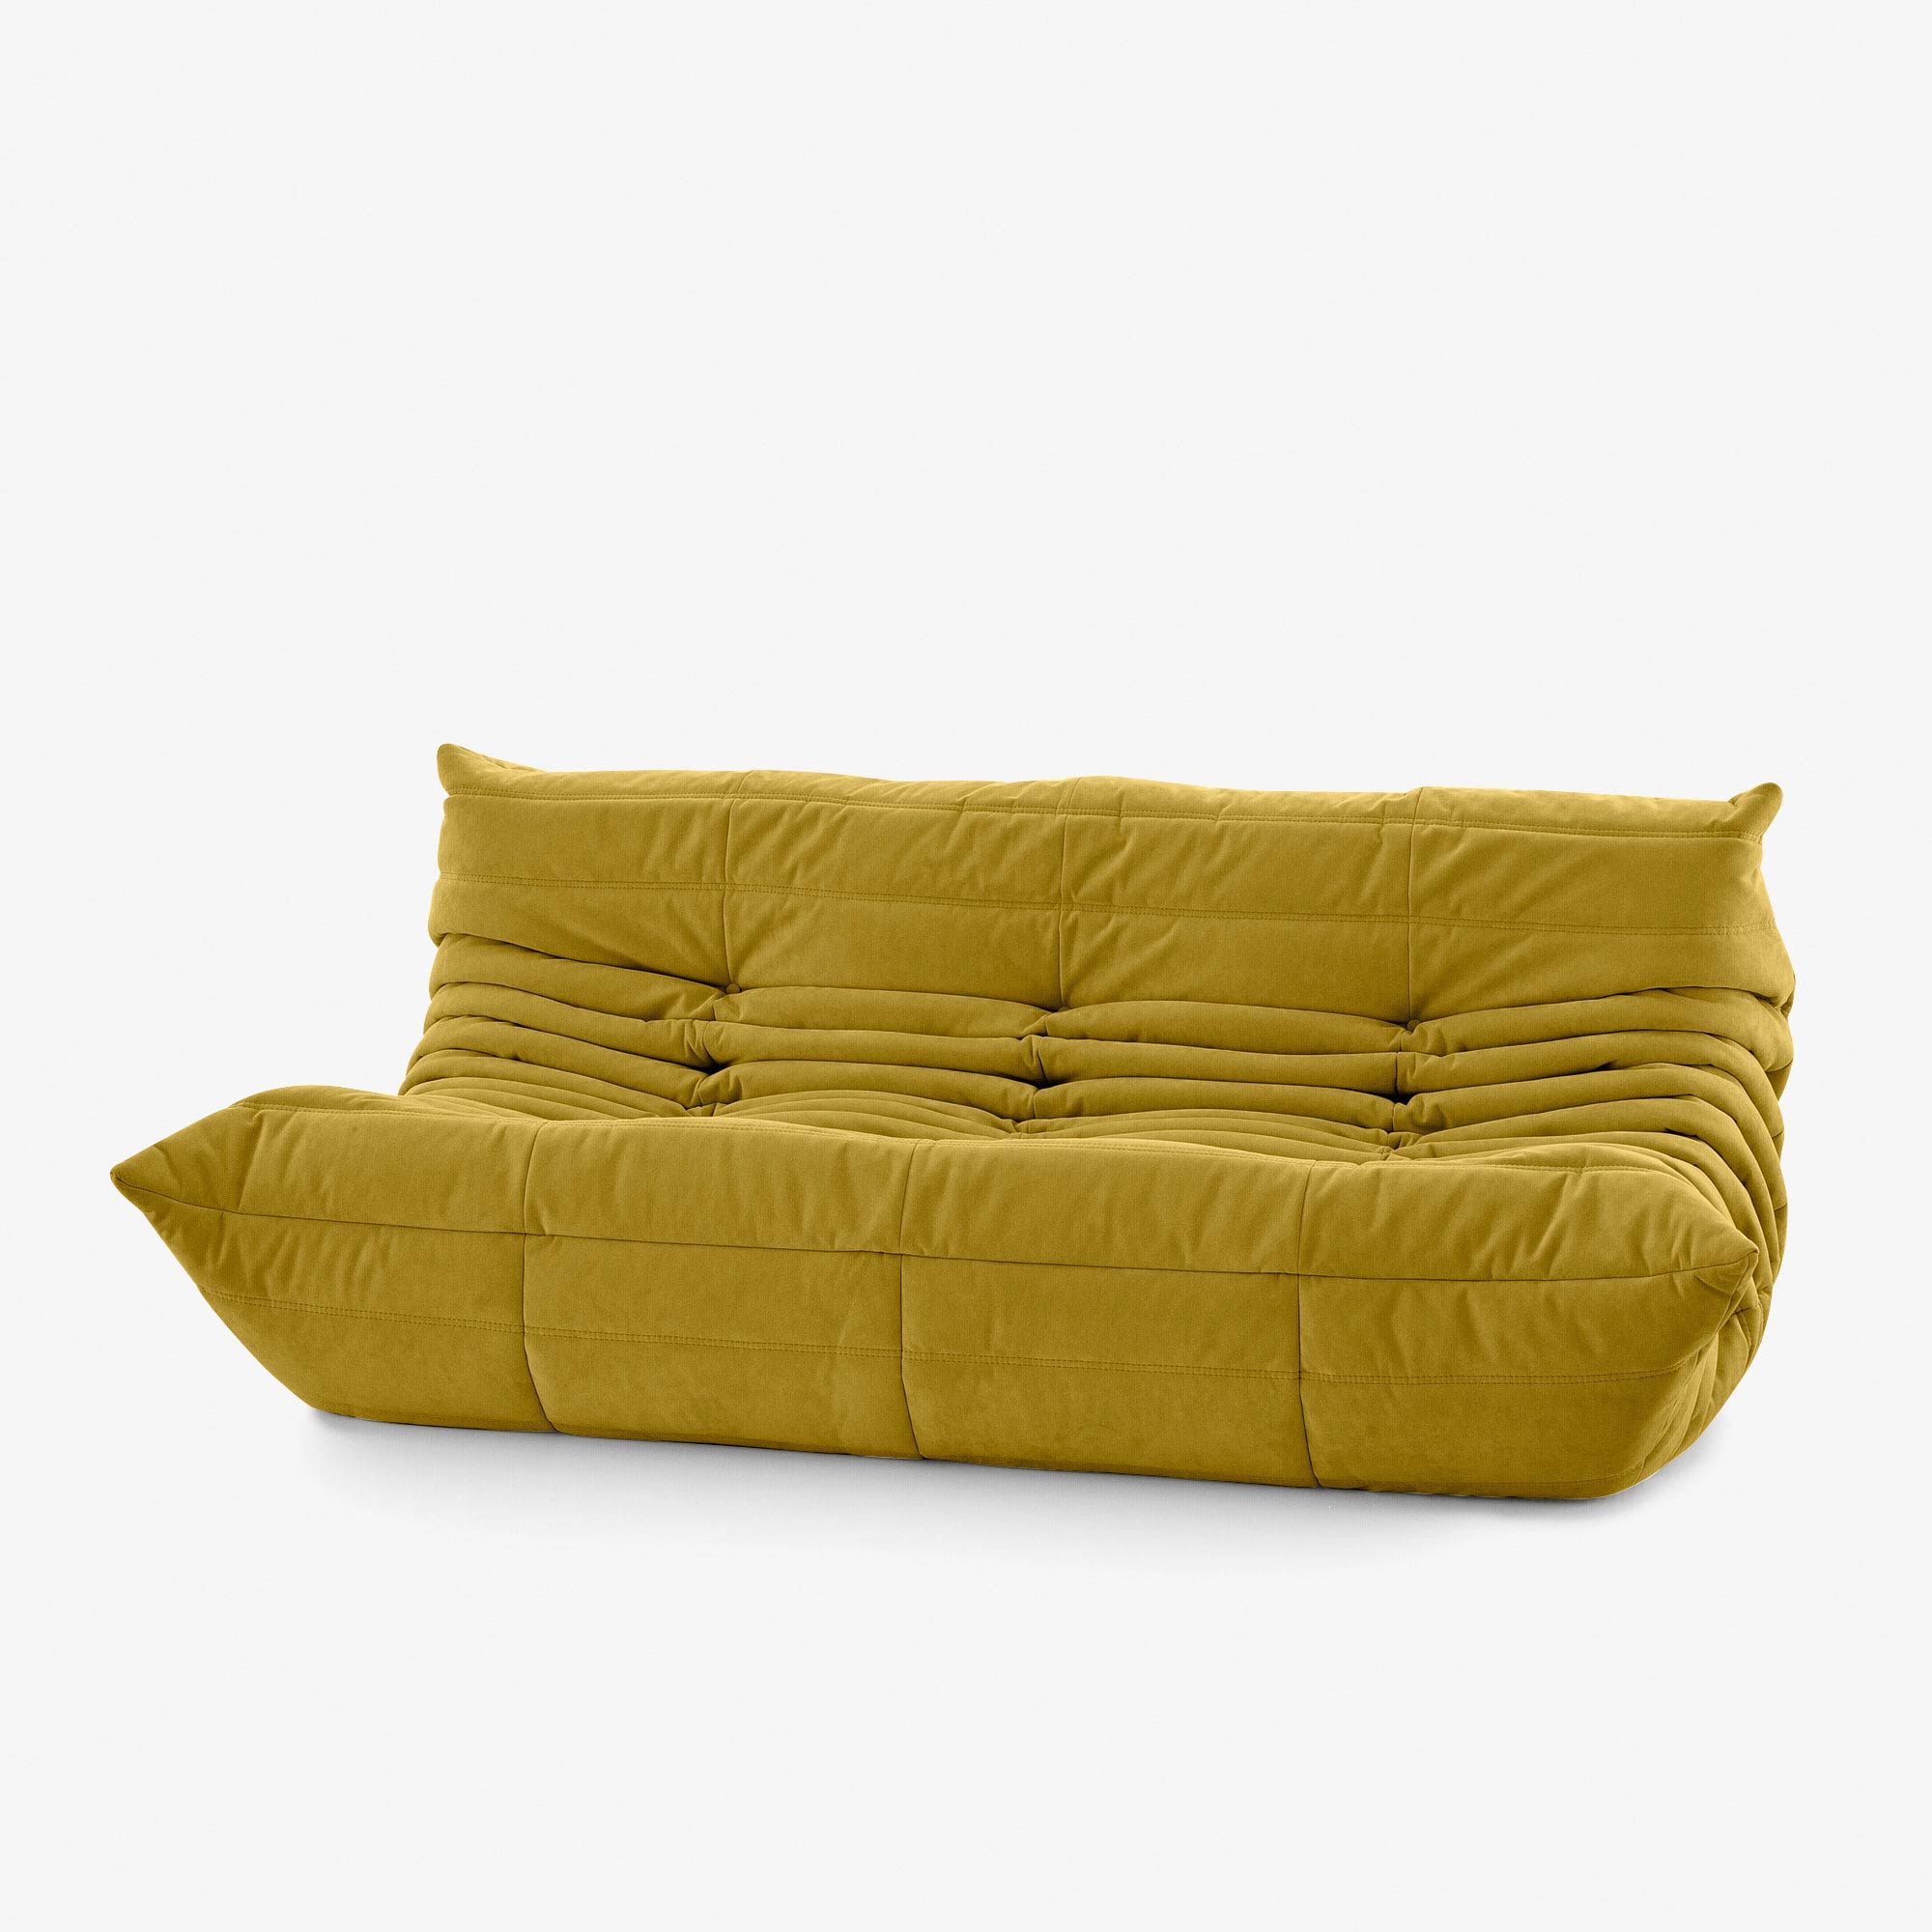 Modern Sofas - Ligne Roset - Contemporary Furniture